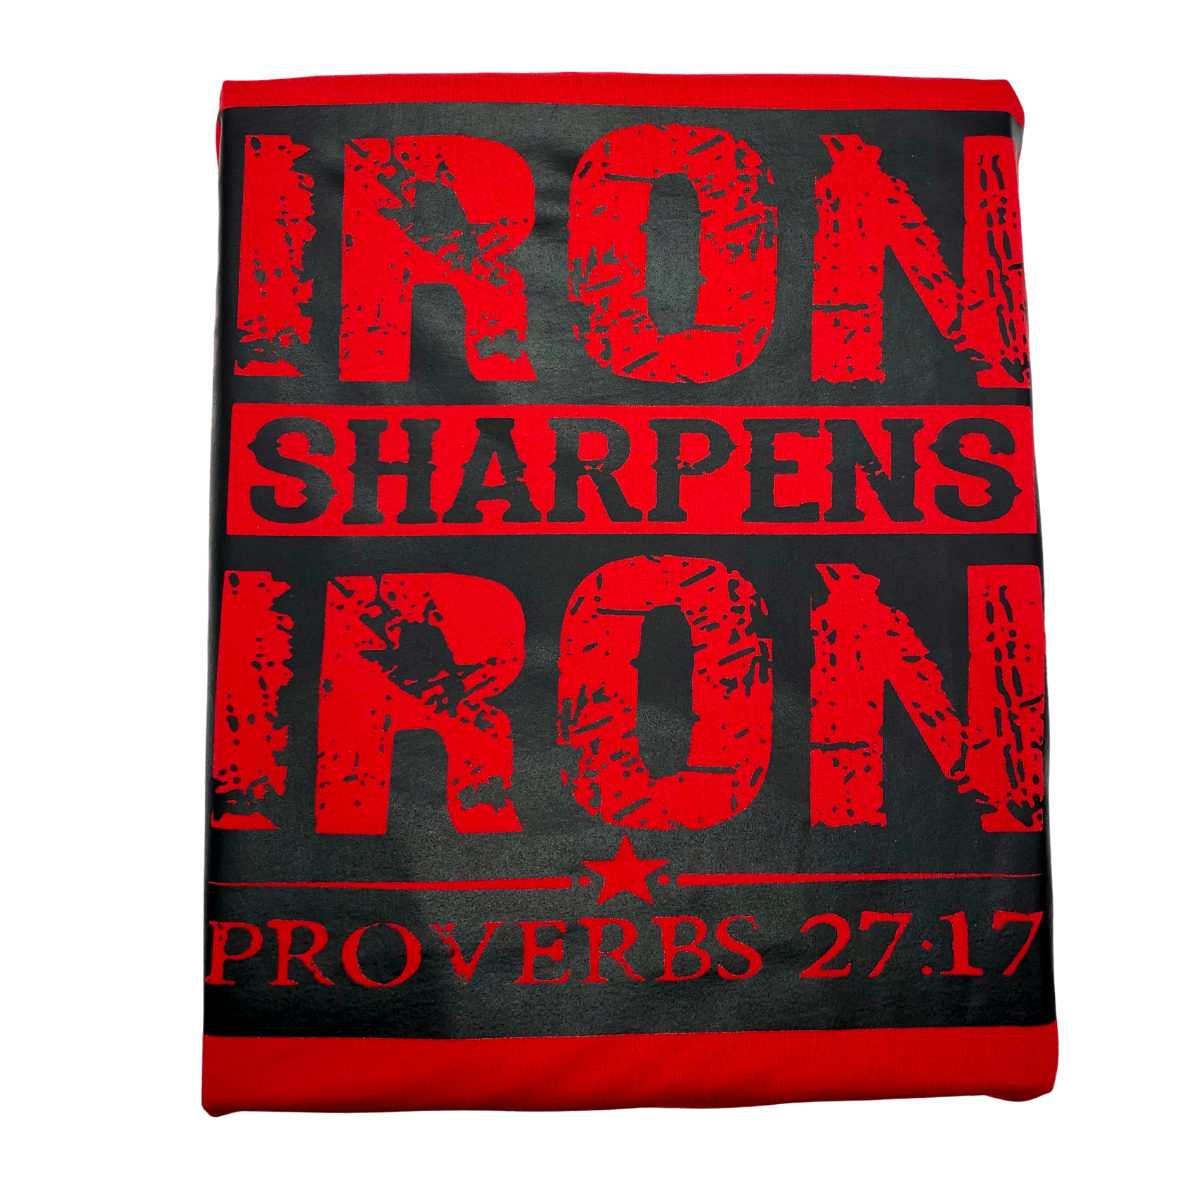 “Iron Sharpens Iron” Motivational T-Shirt